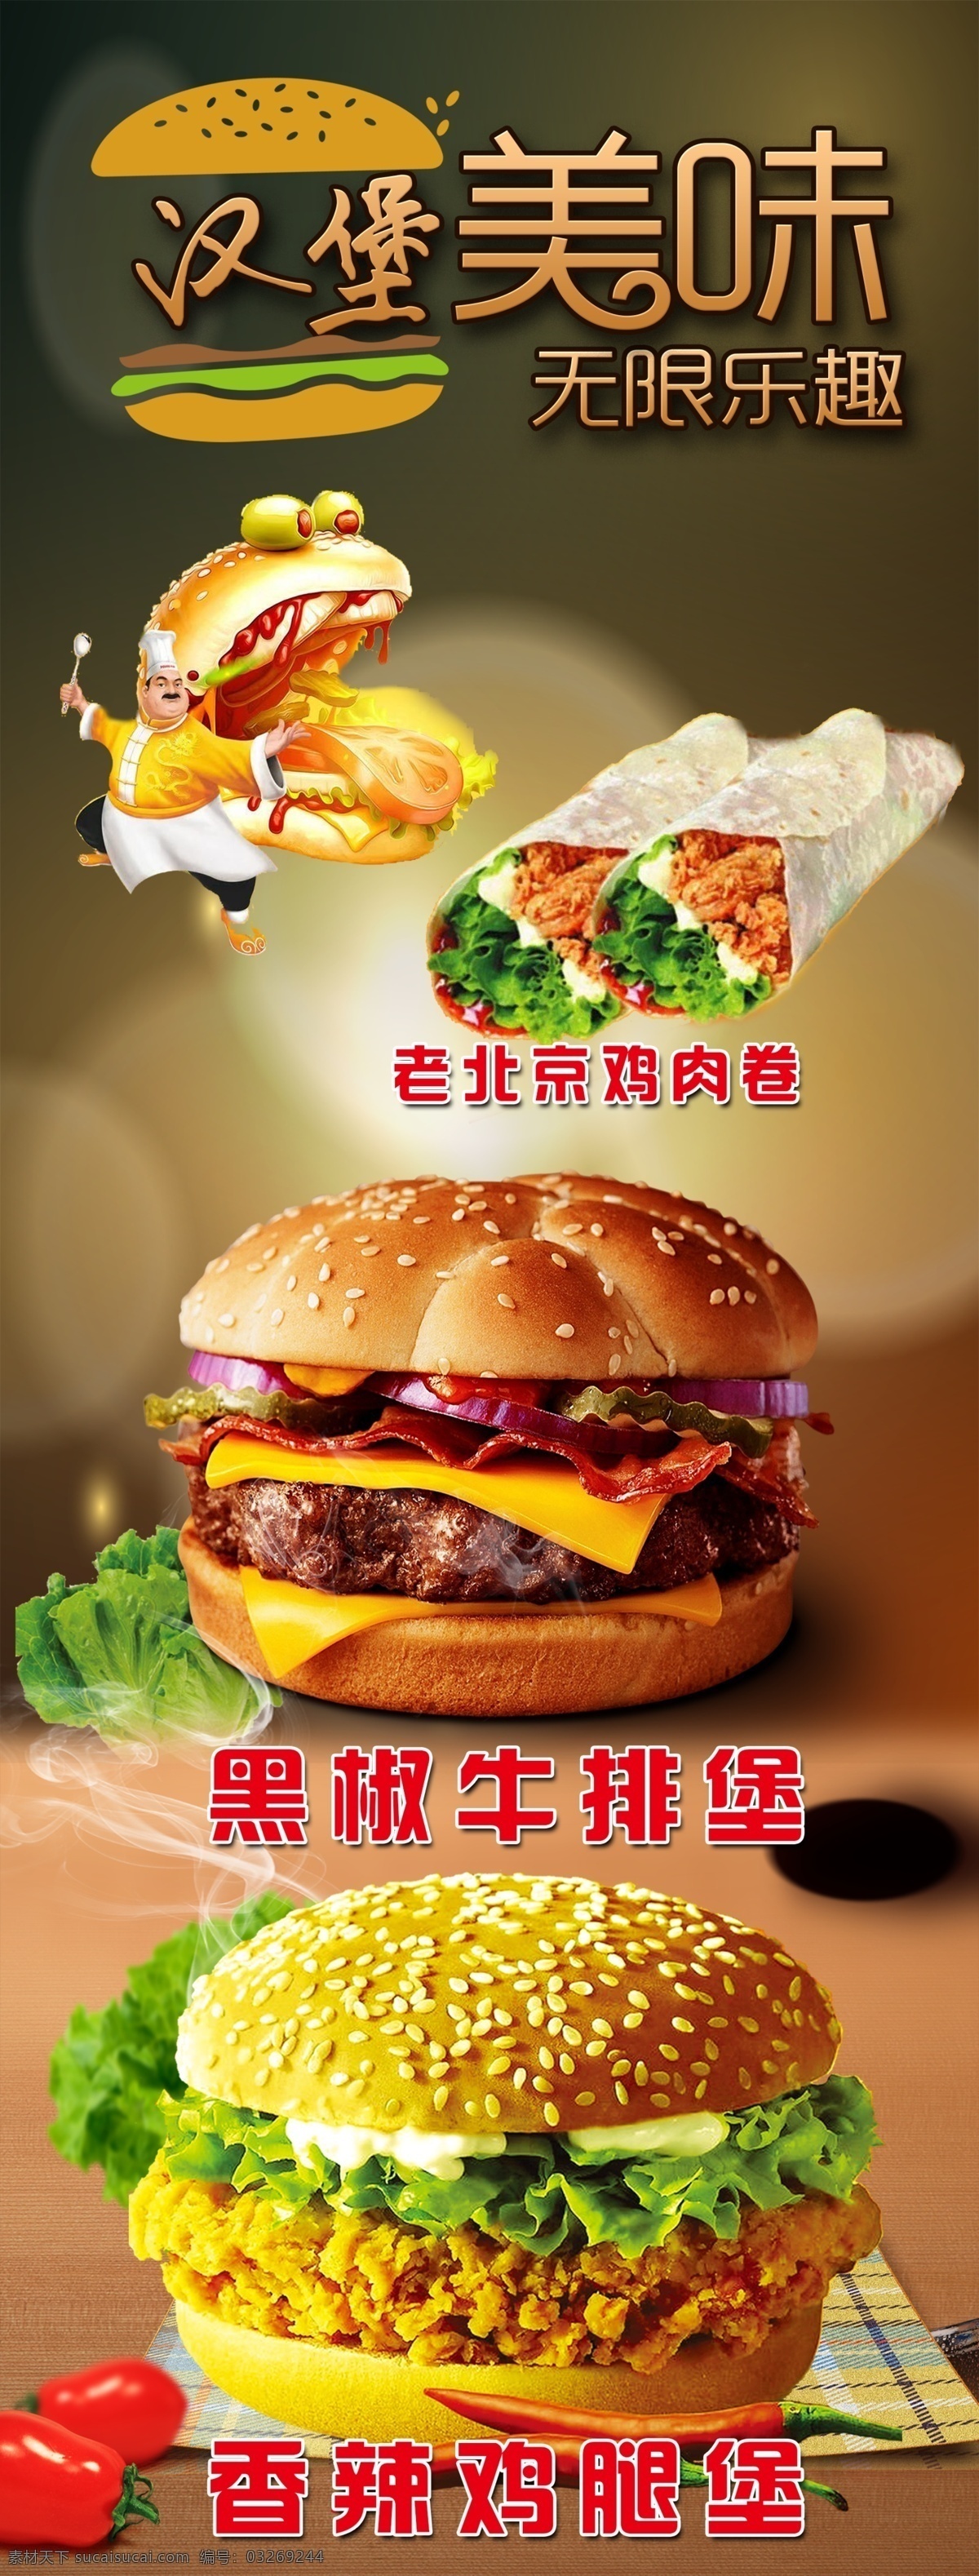 美味汉堡 汉堡 汉堡海报 汉堡挂画 汉堡墙画 汉堡图片 汉堡广告 外卖 外卖海报 菜单菜谱